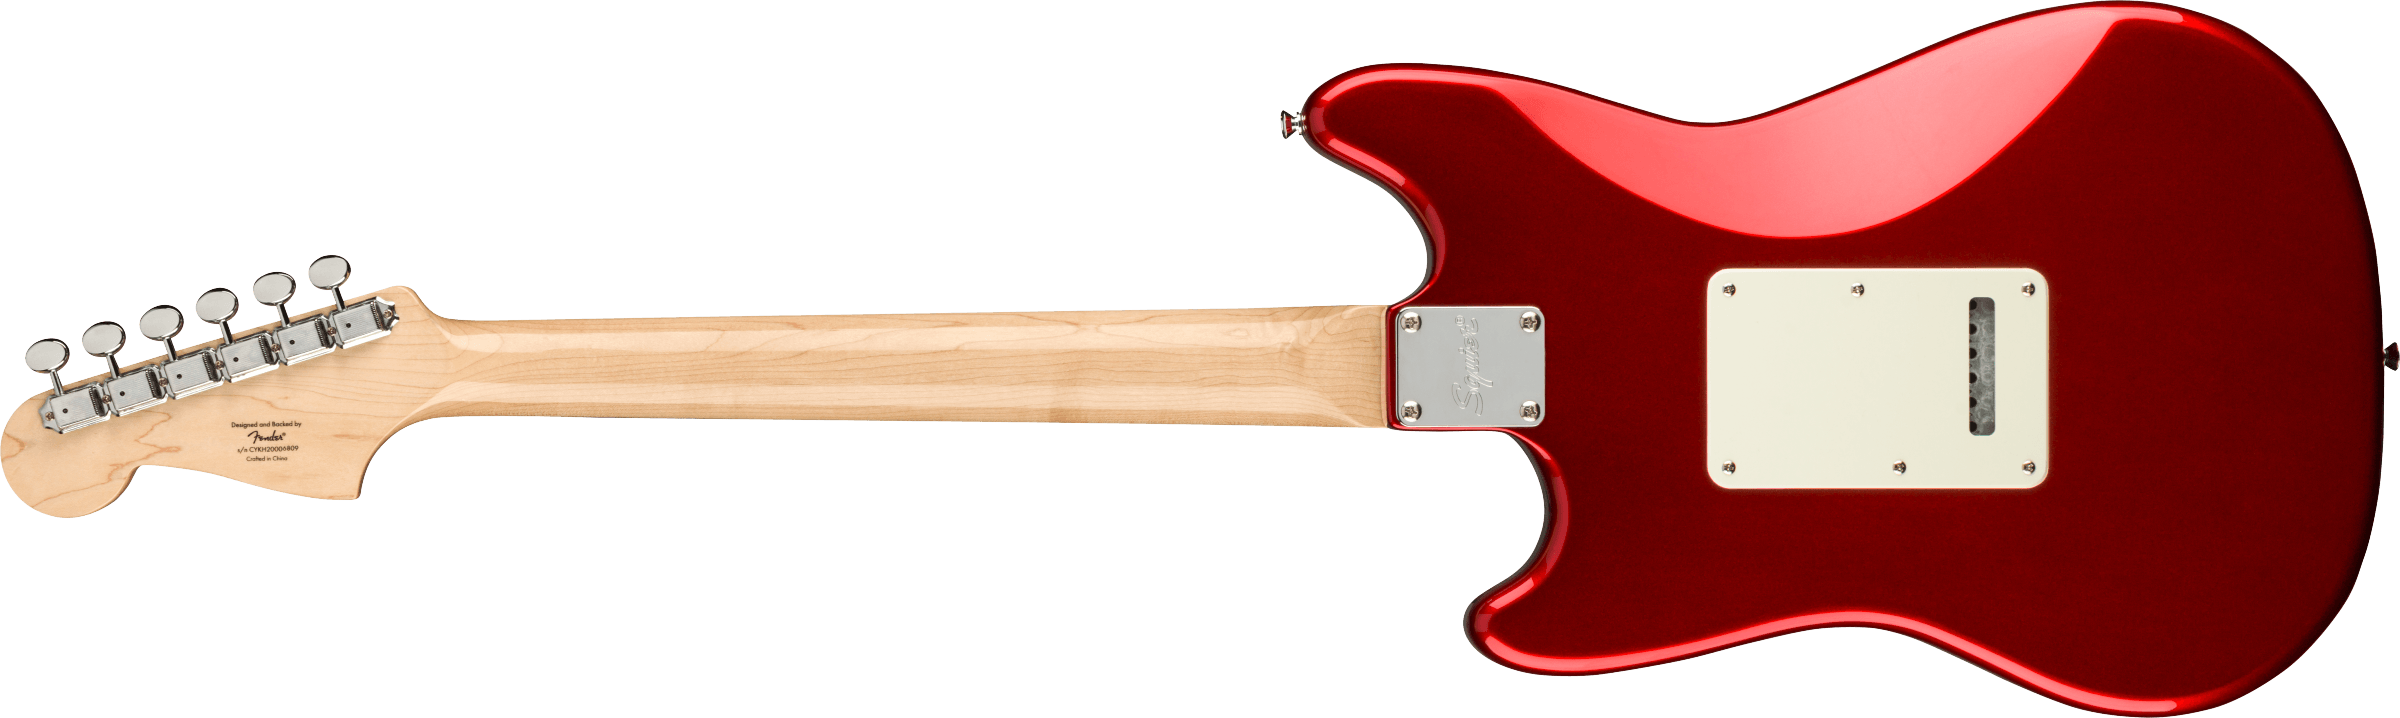 Squier Cyclone Paranormal 3s Trem Lau - Candy Apple Red - Guitare Électrique RÉtro Rock - Variation 1